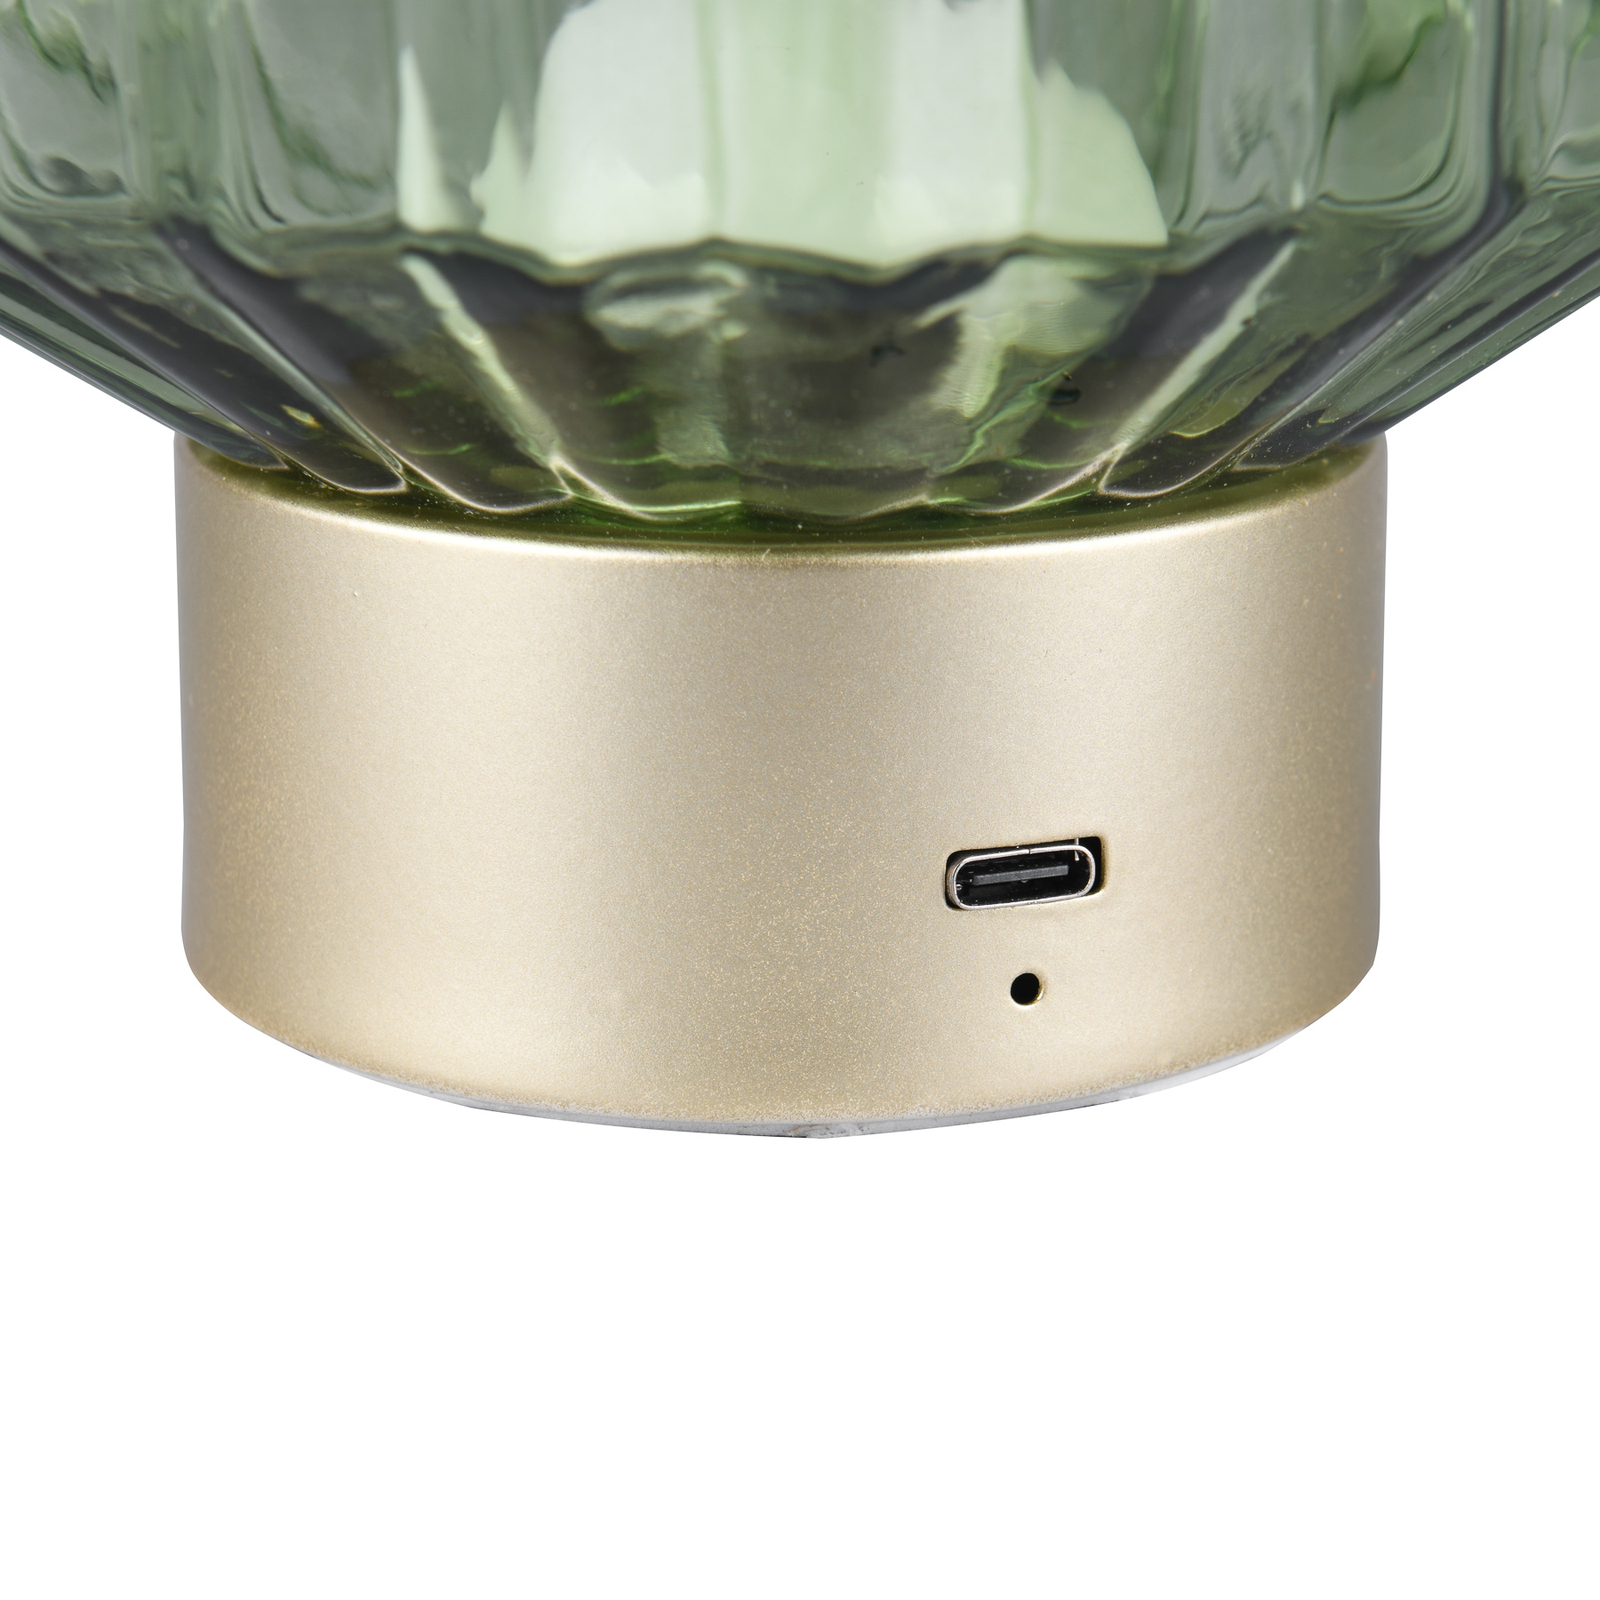 Lord LED επαναφορτιζόμενο επιτραπέζιο φωτιστικό, ορείχαλκο/πράσινο, ύψος